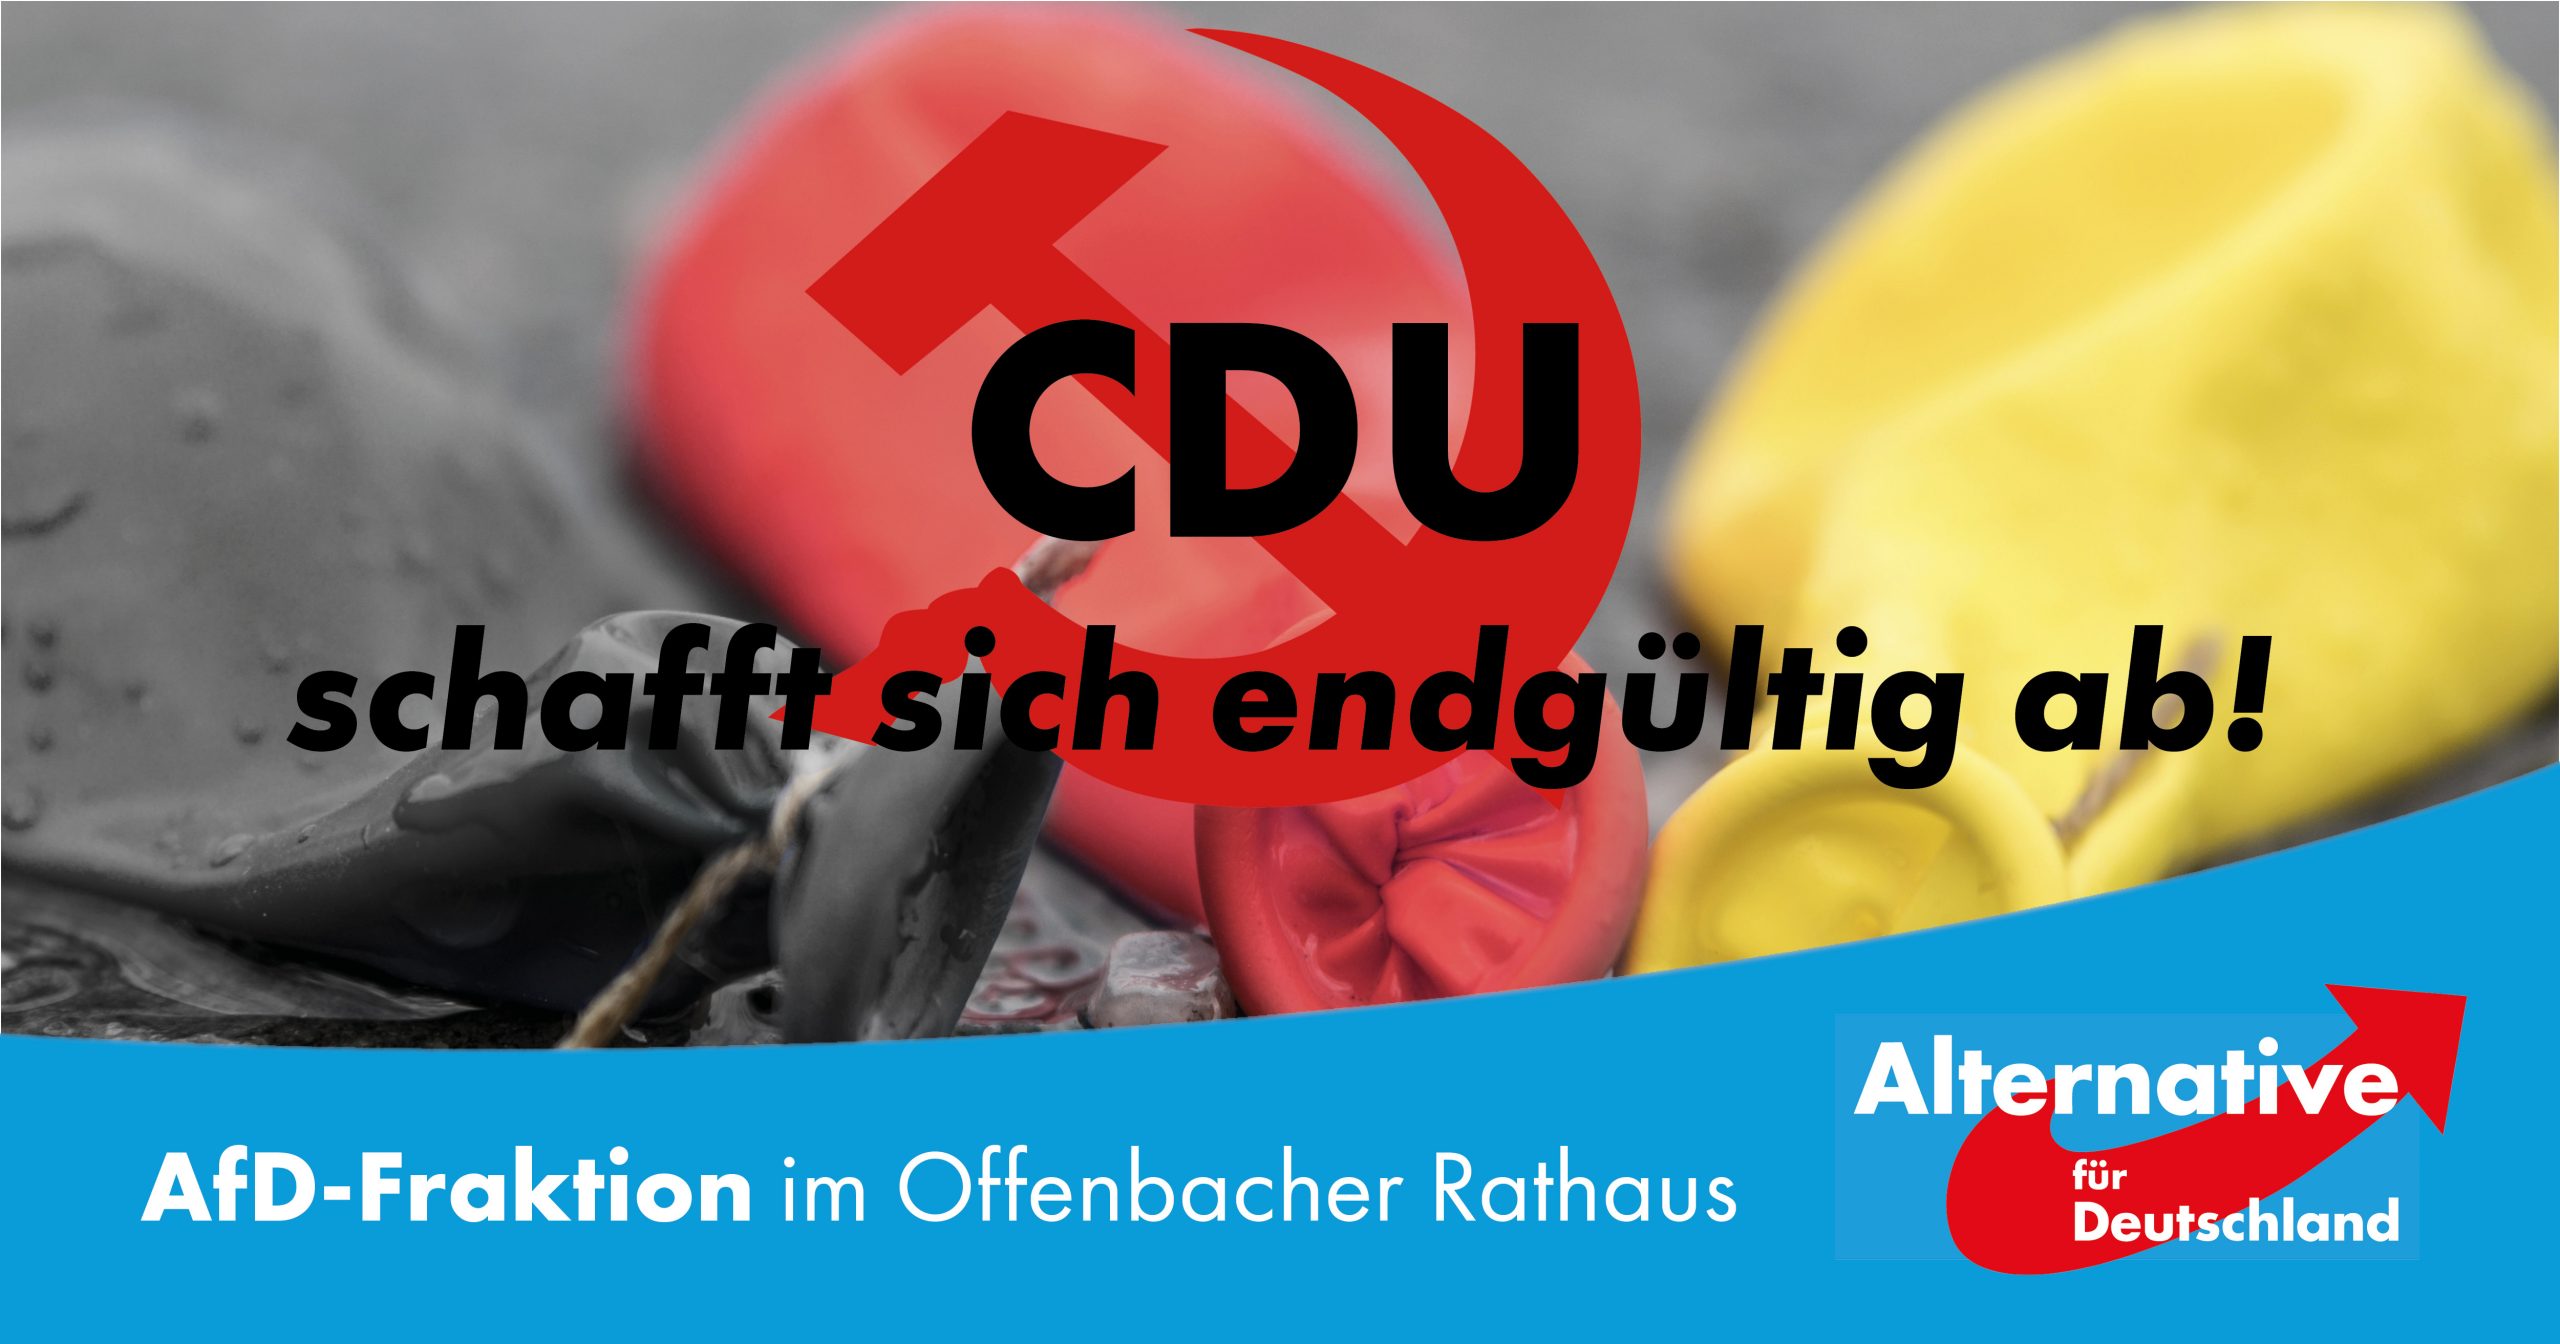 You are currently viewing CDU schafft sich endgültig ab!